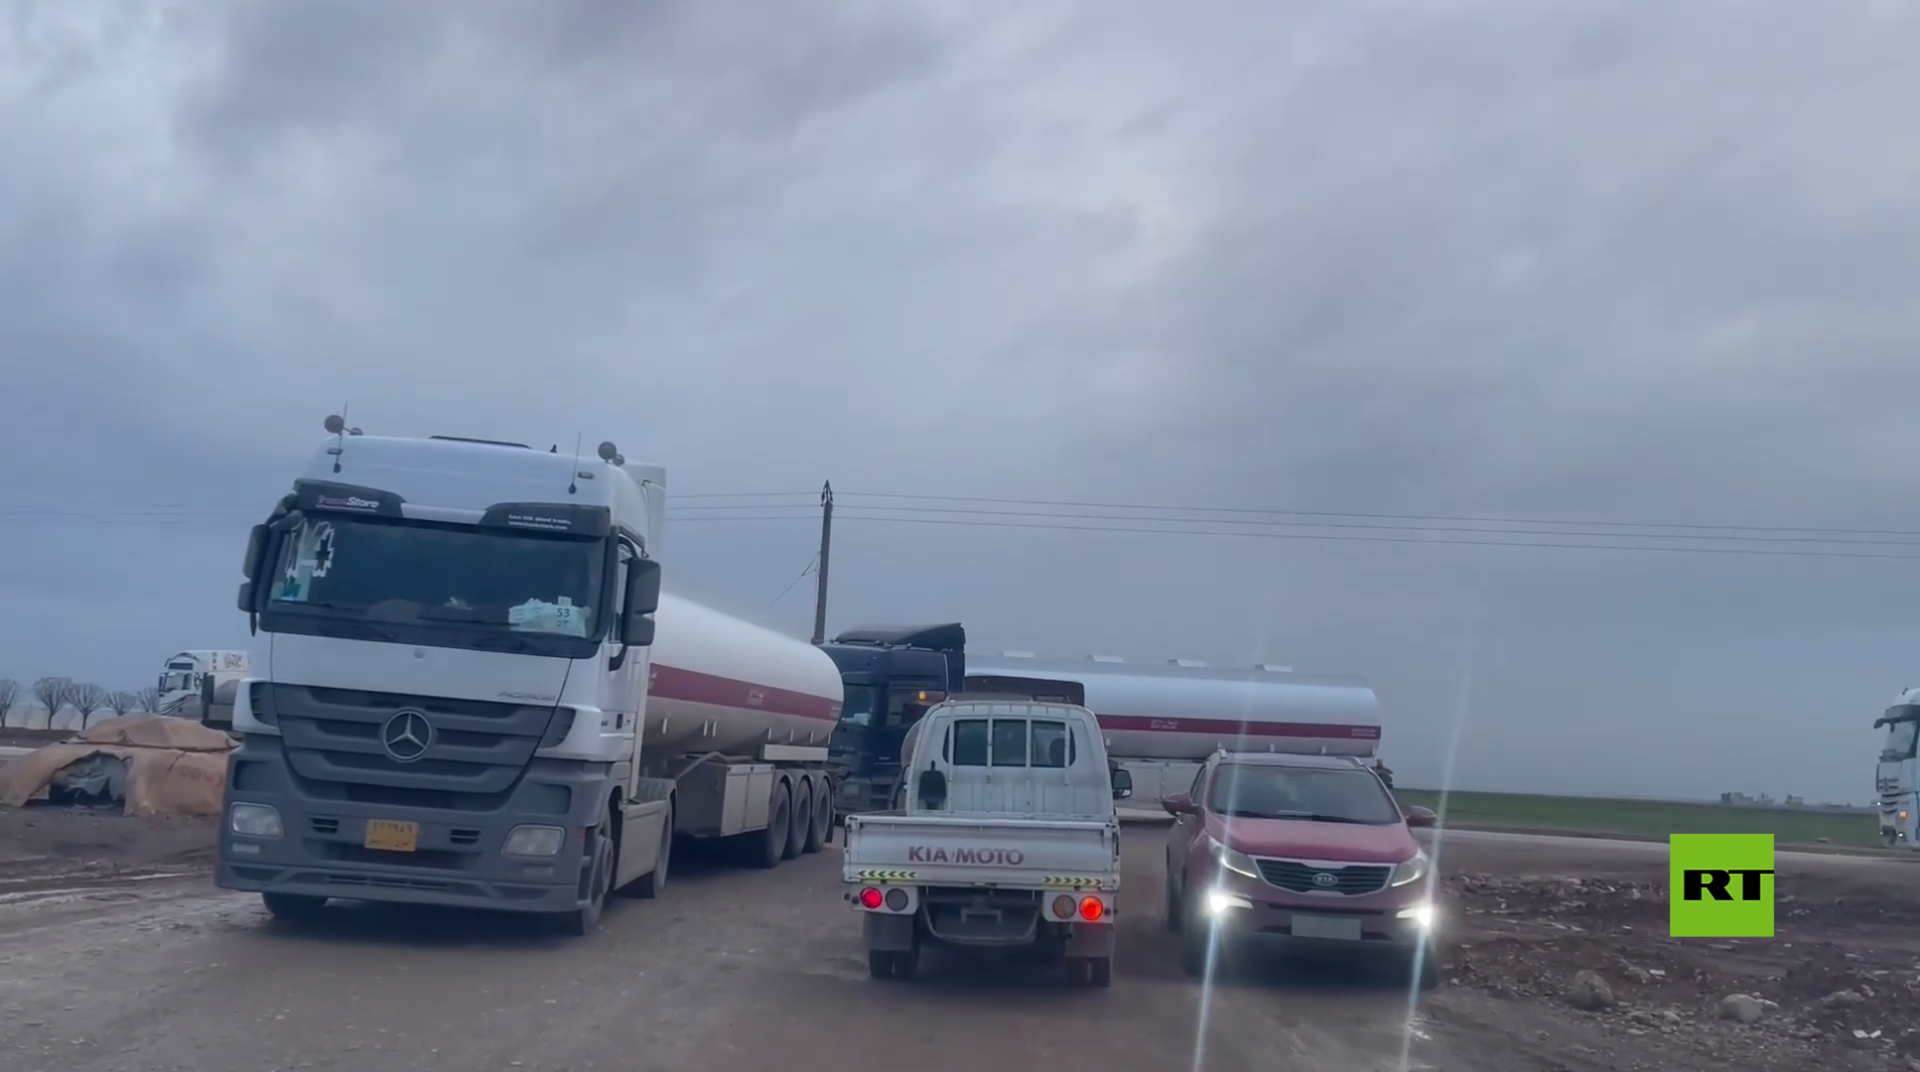 مراسلنا: قافلة شاحنات تابعة للتحالف الدولي تتجه إلى المواقع الأمريكية شرقي سوريا قادمة من العراق